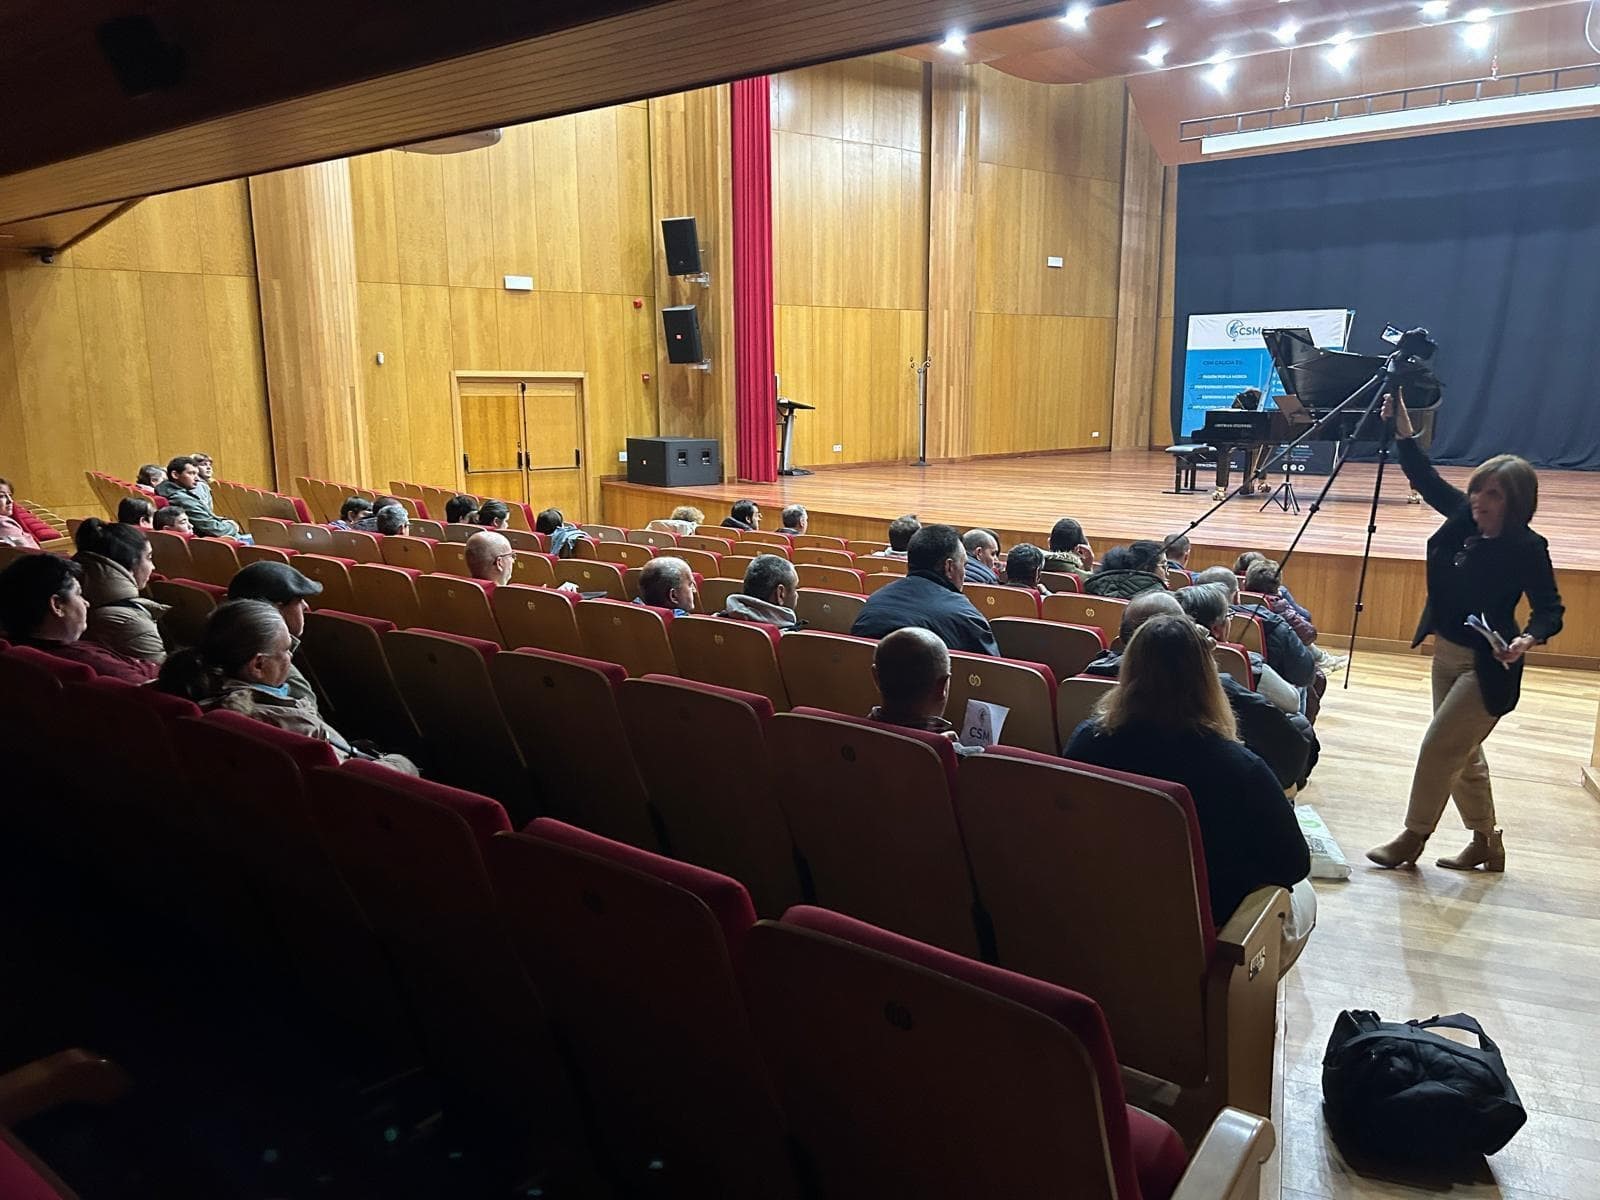 LAR asiste a un Concierto de Música Clásica de la mano de CSM Galicia - Imagen 4